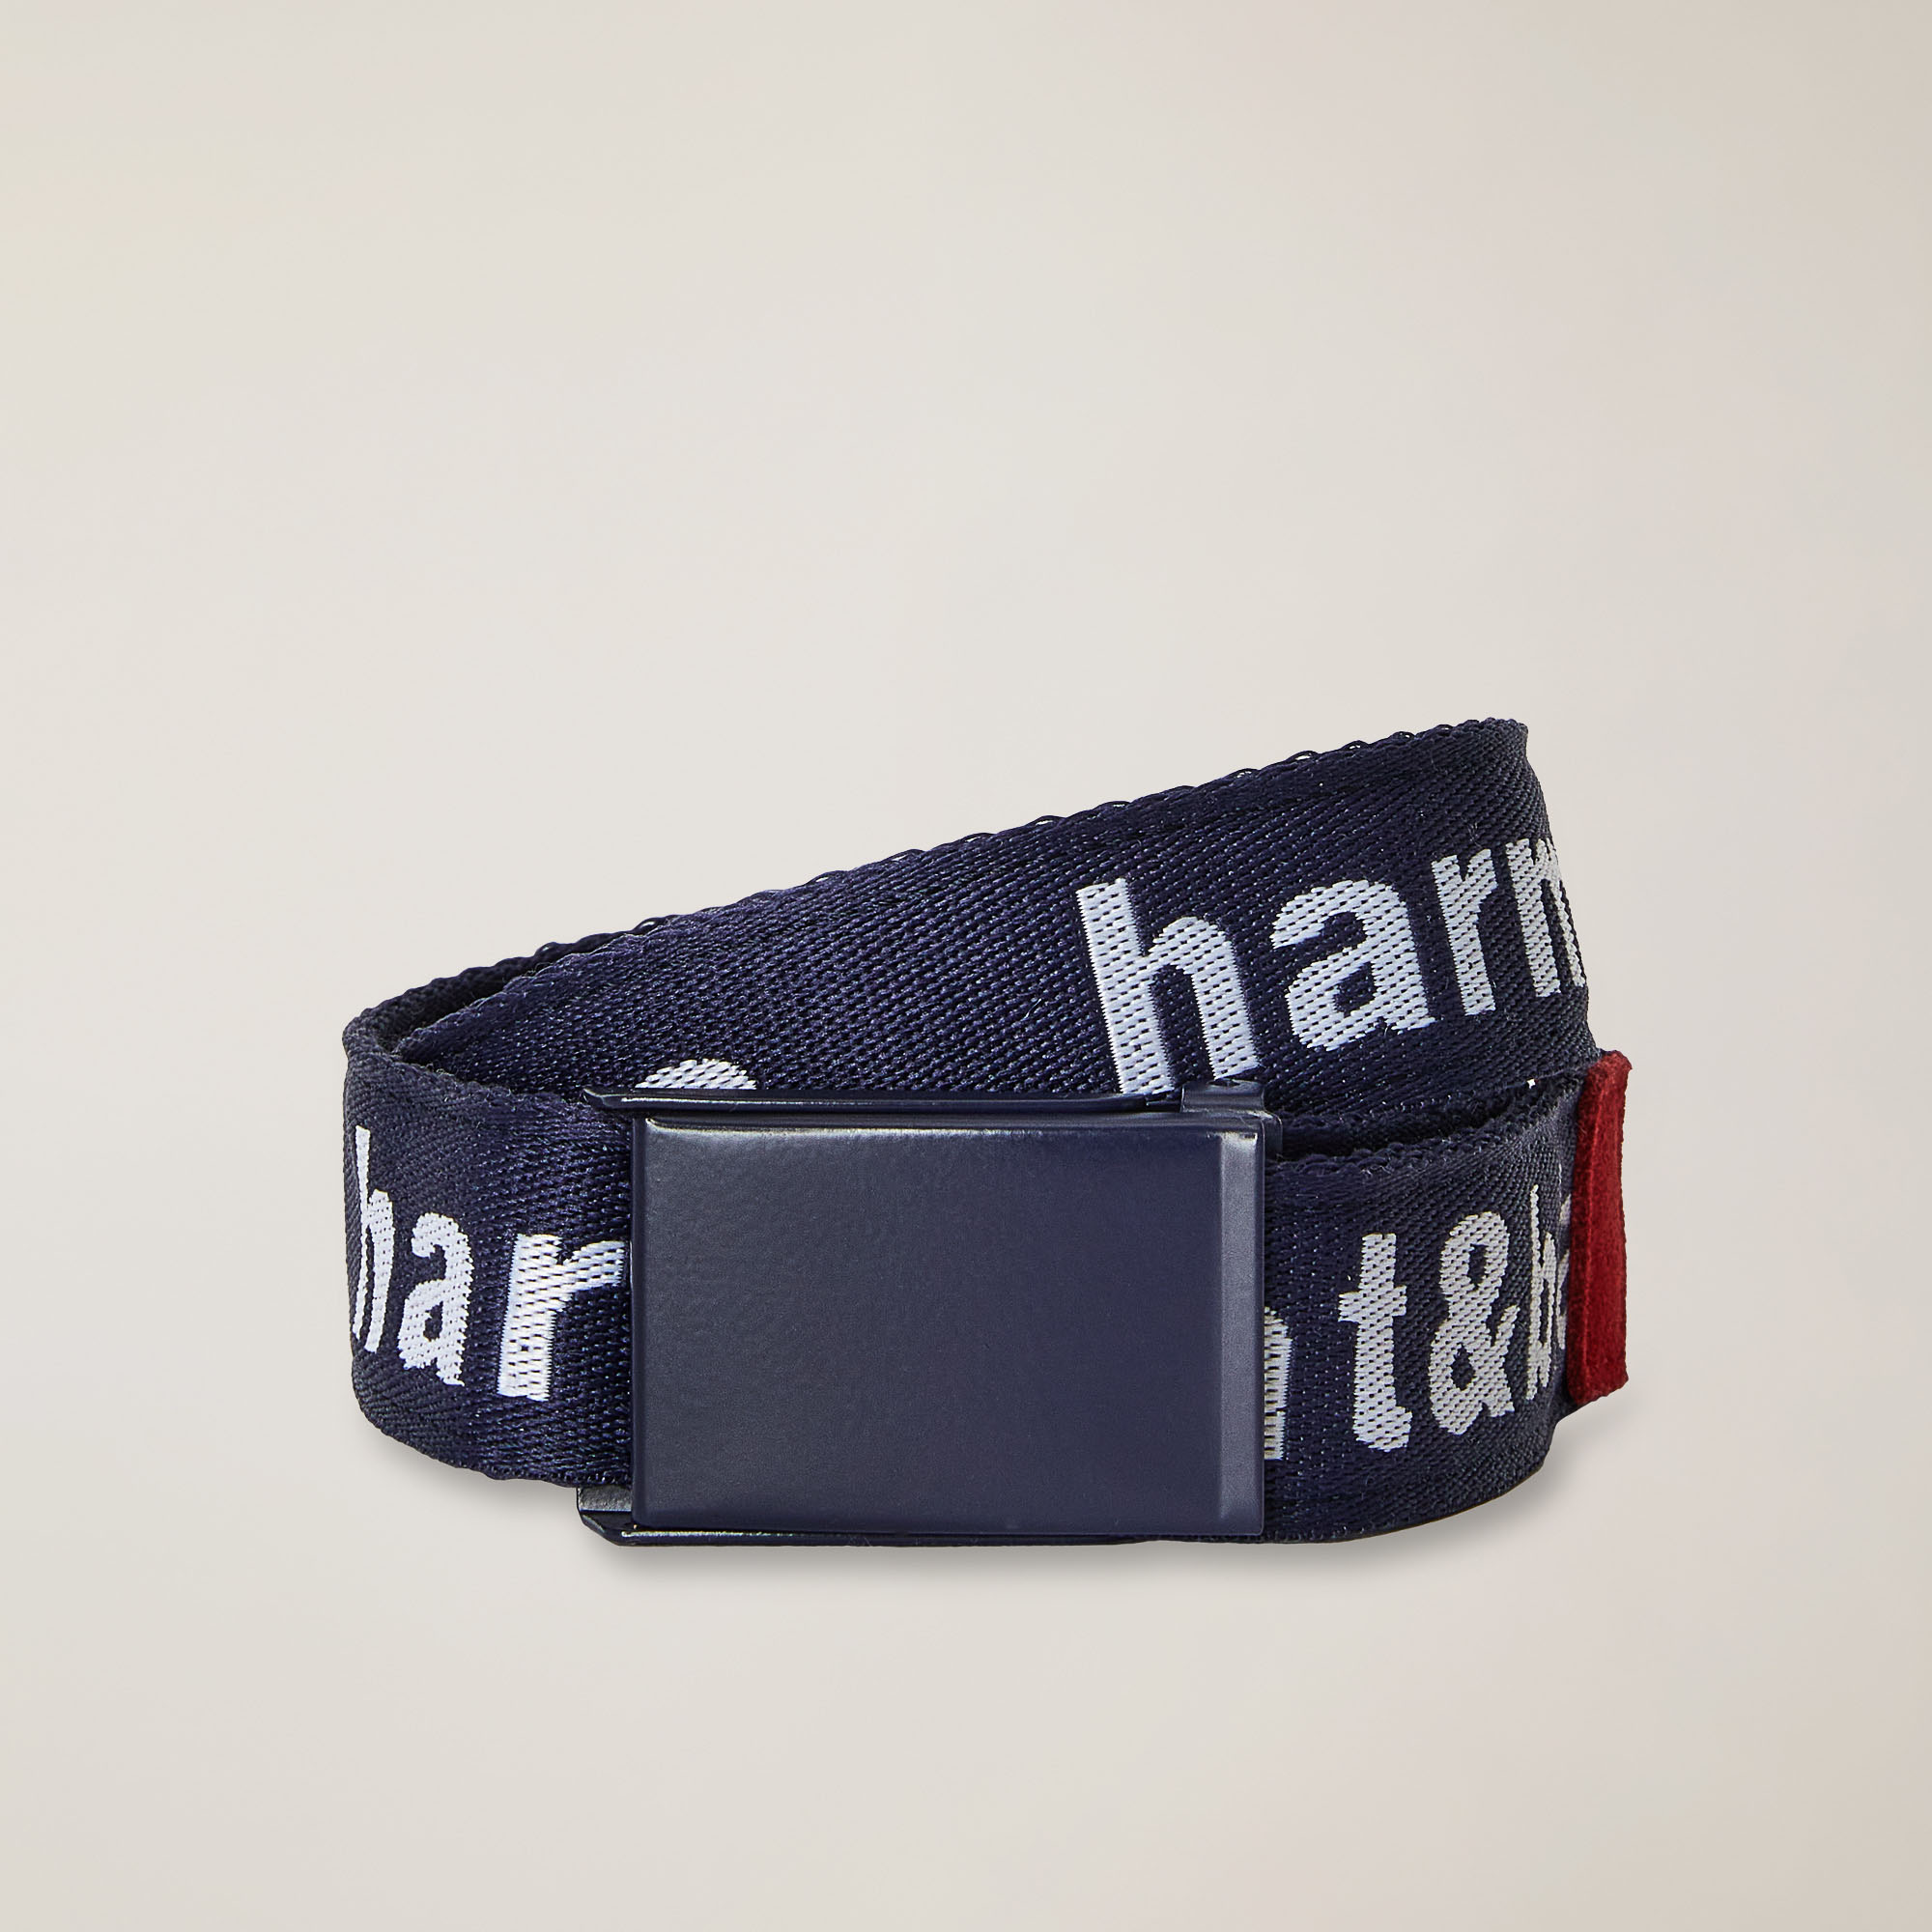 Cinturón con cinta distintiva, Azul claro, large